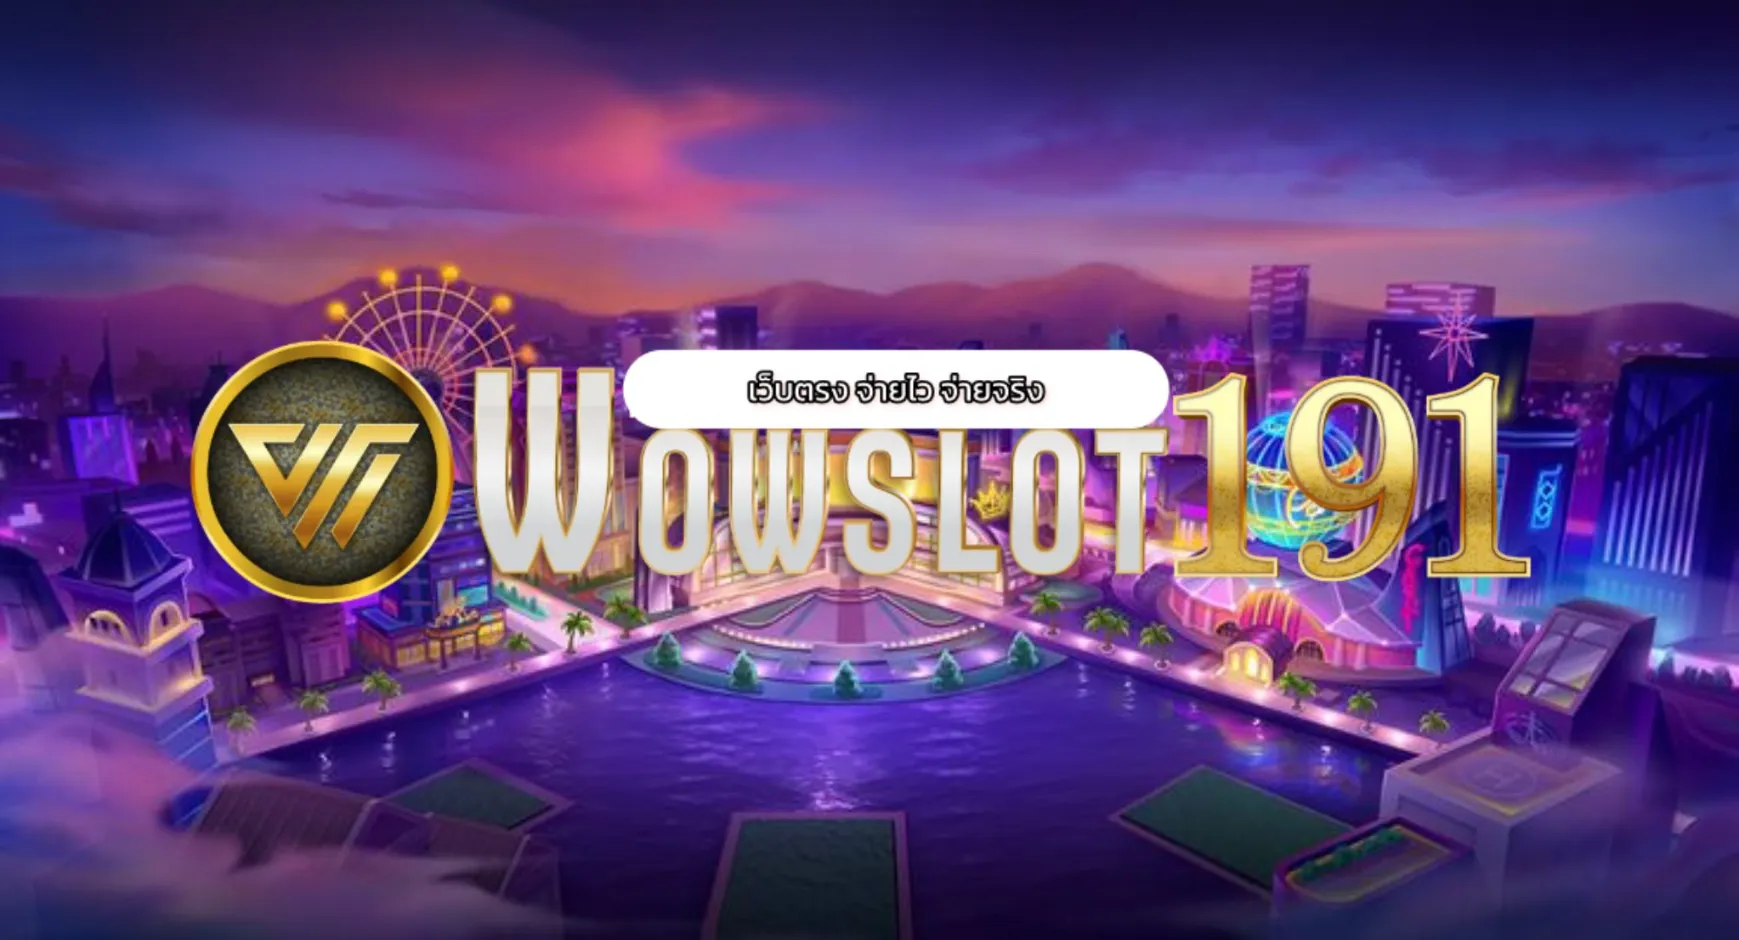 เข้าร่วมสนุกกับเกมสล็อตที่น่าตื่นเต้นที่สุดกับ wowslot191 ตอนนี้!